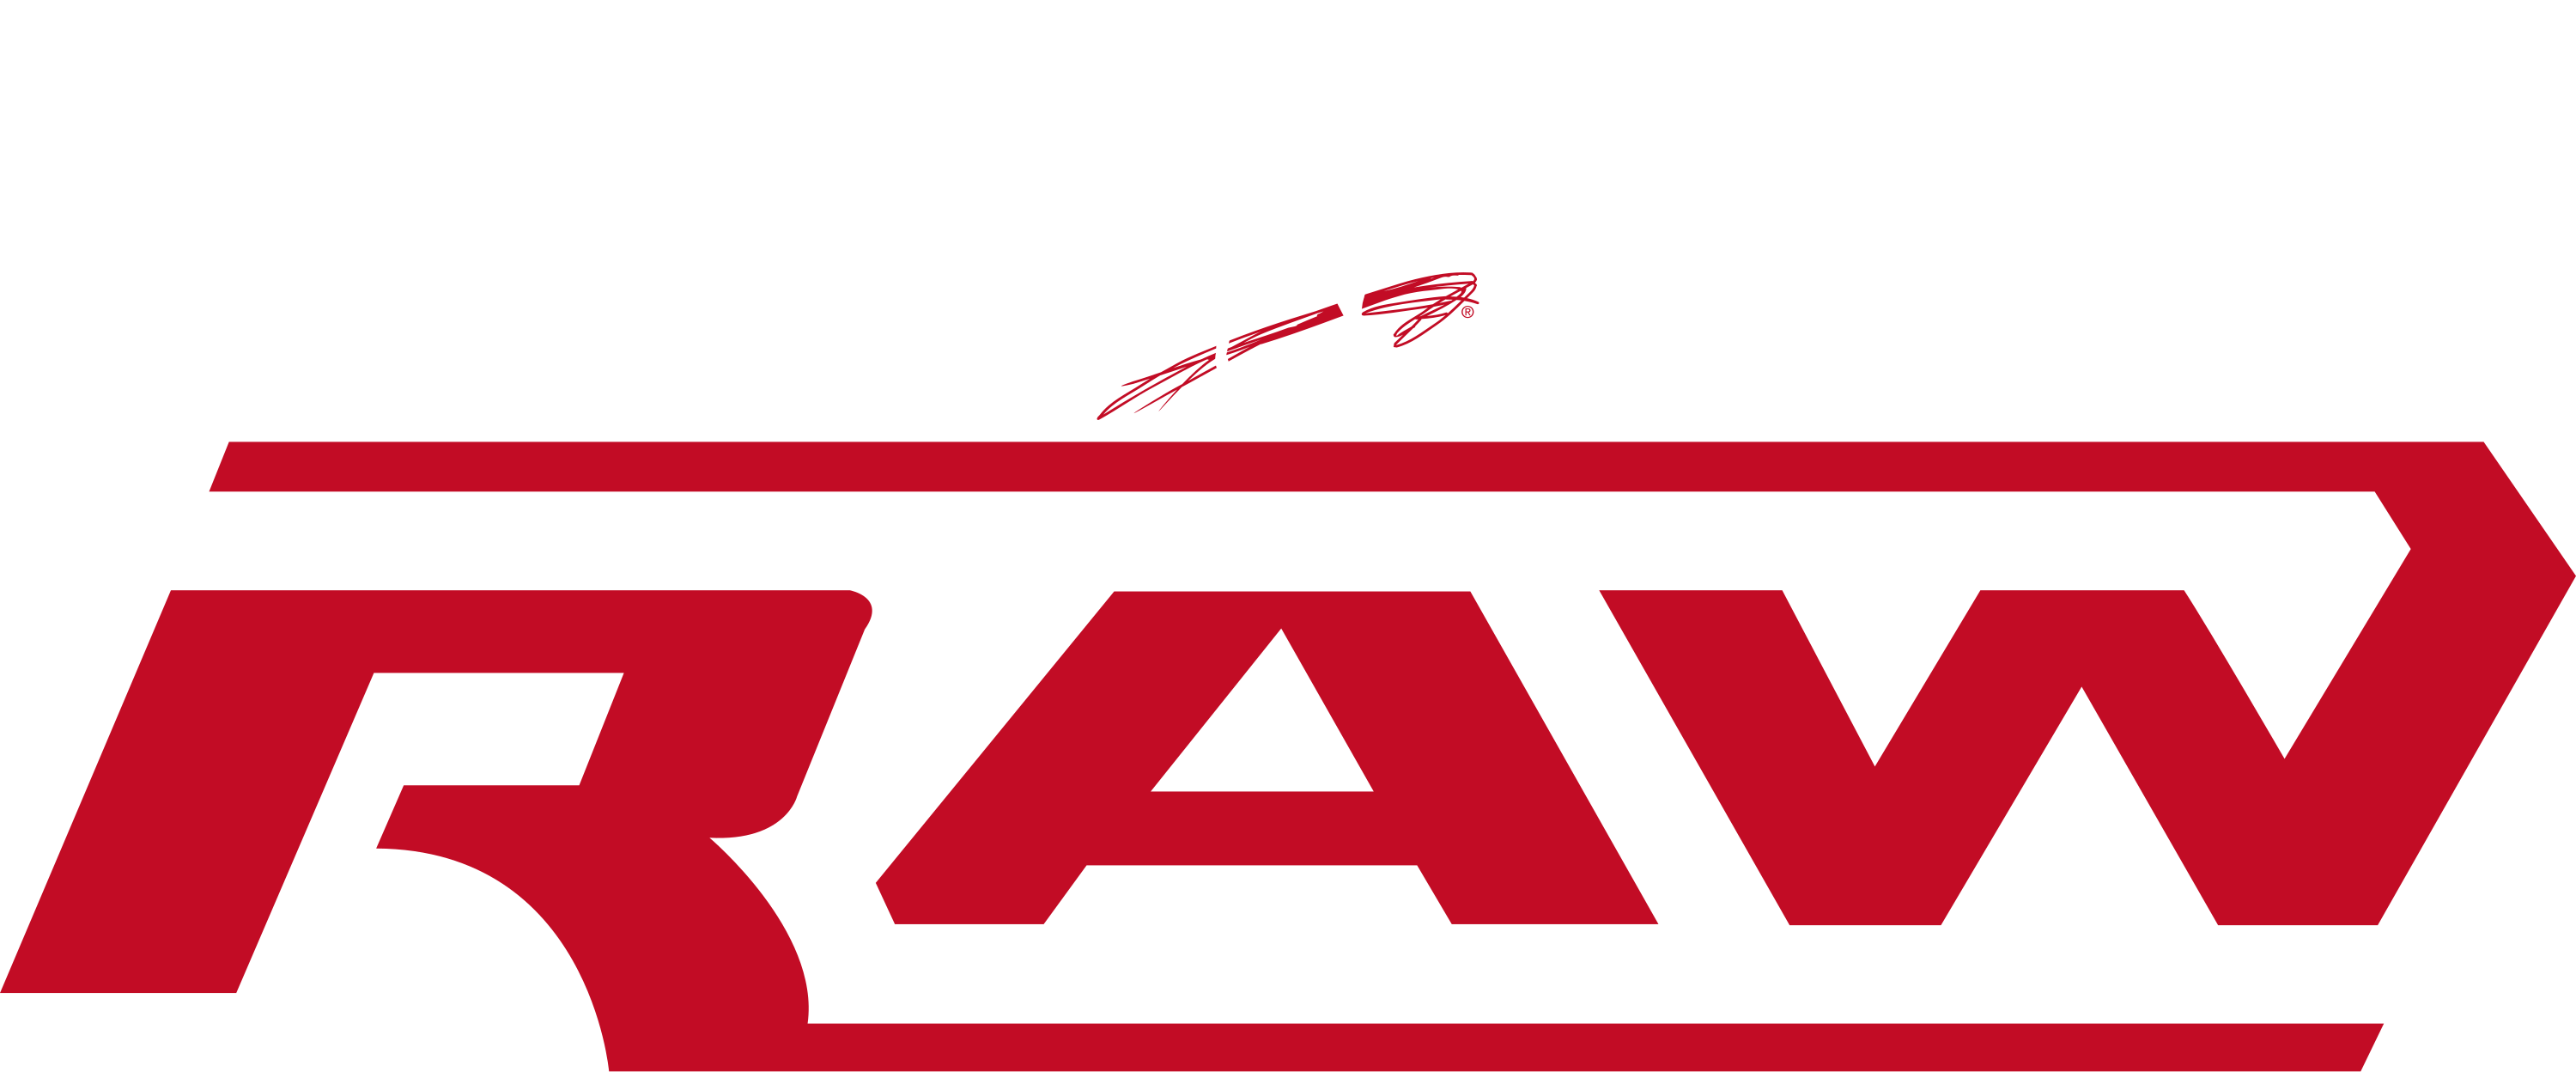 WWE Raw (2006-2012) Logo by DarkVoidPictures on DeviantArt